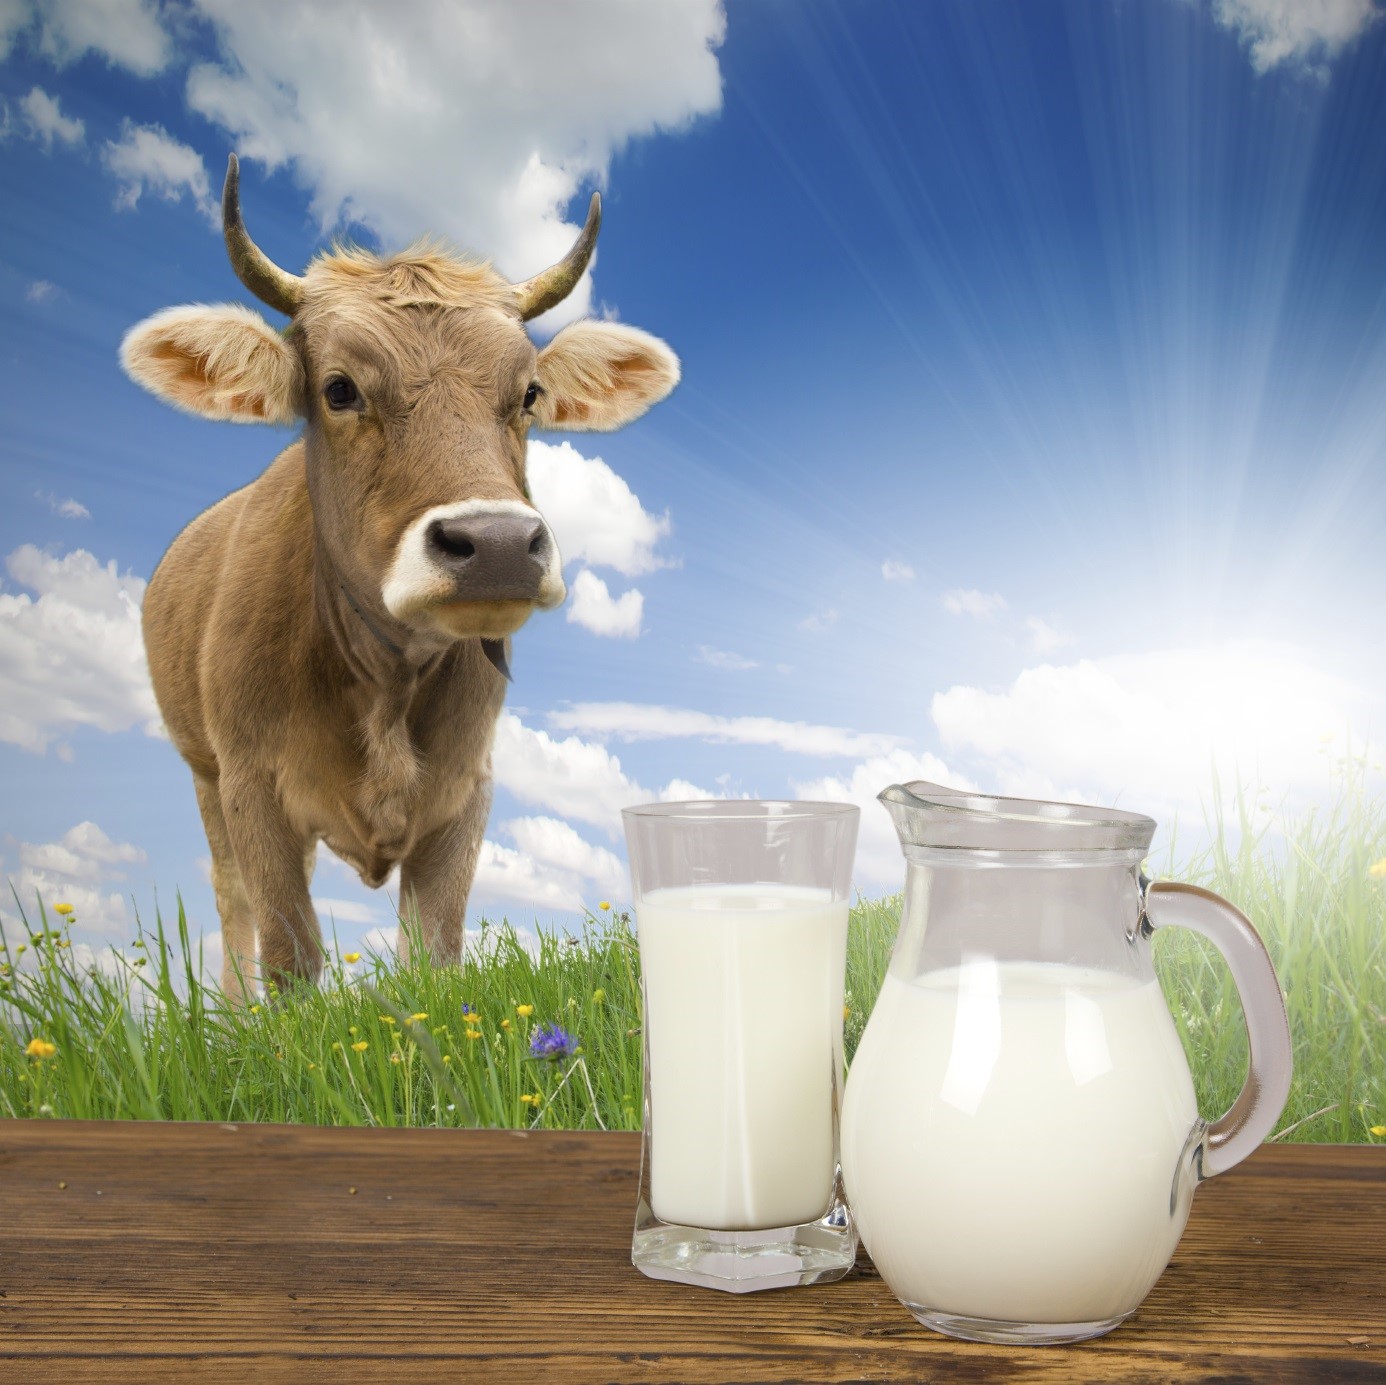 Покажи картинку молока. Молоко. Коровье молоко. Молочная продукция с коровой. Молоко домашнее.